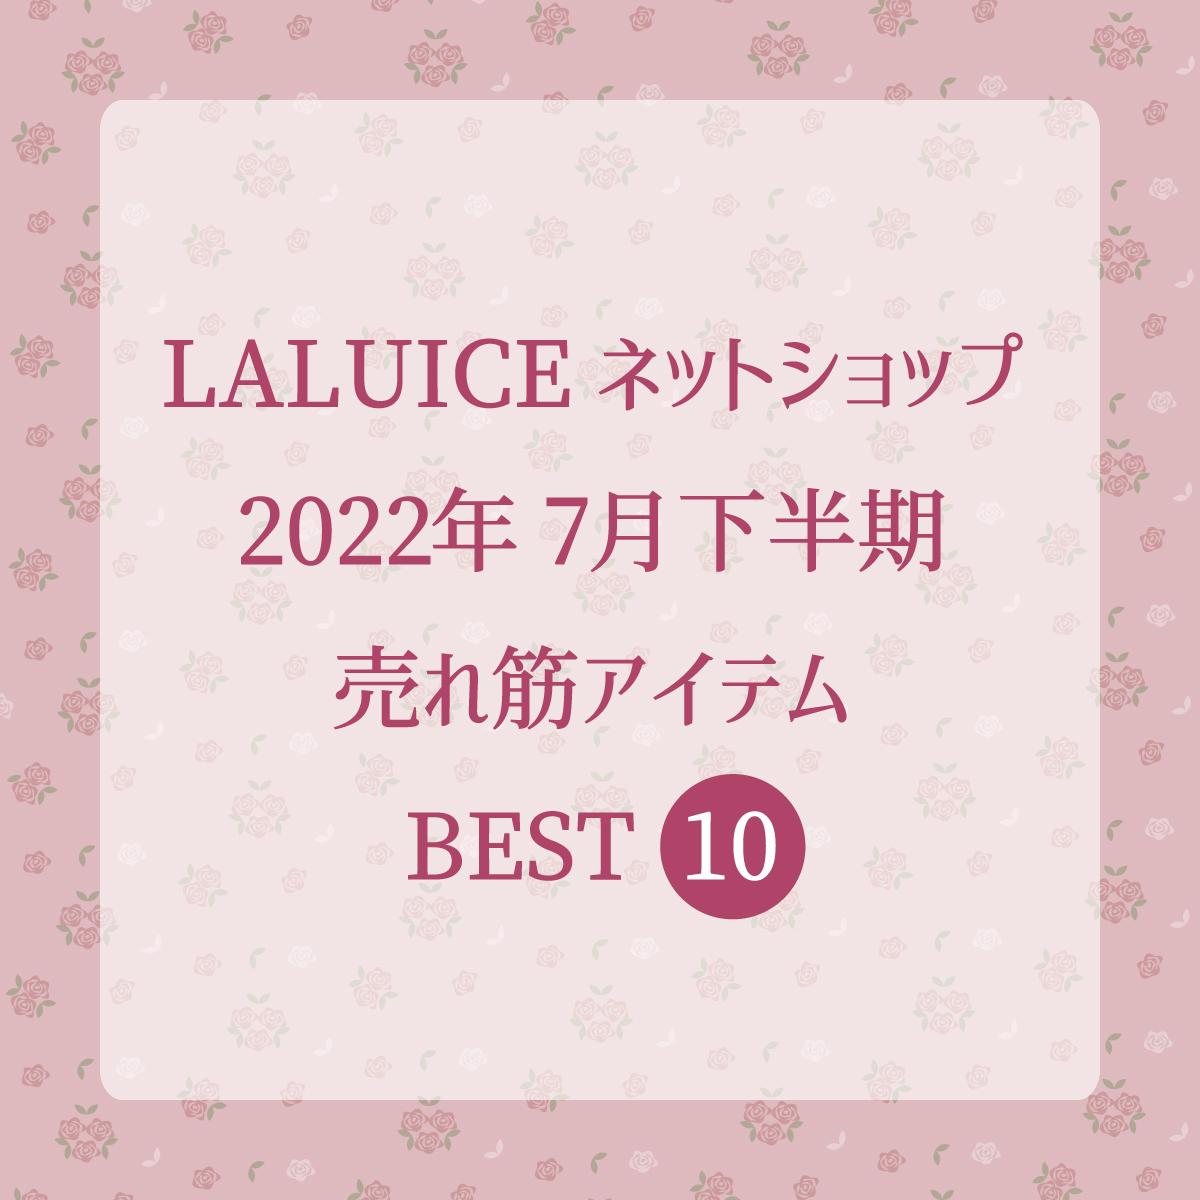 2022年7月下半期(7/16～7/31) LALUICEネットショップ売れ筋アイテム BEST10